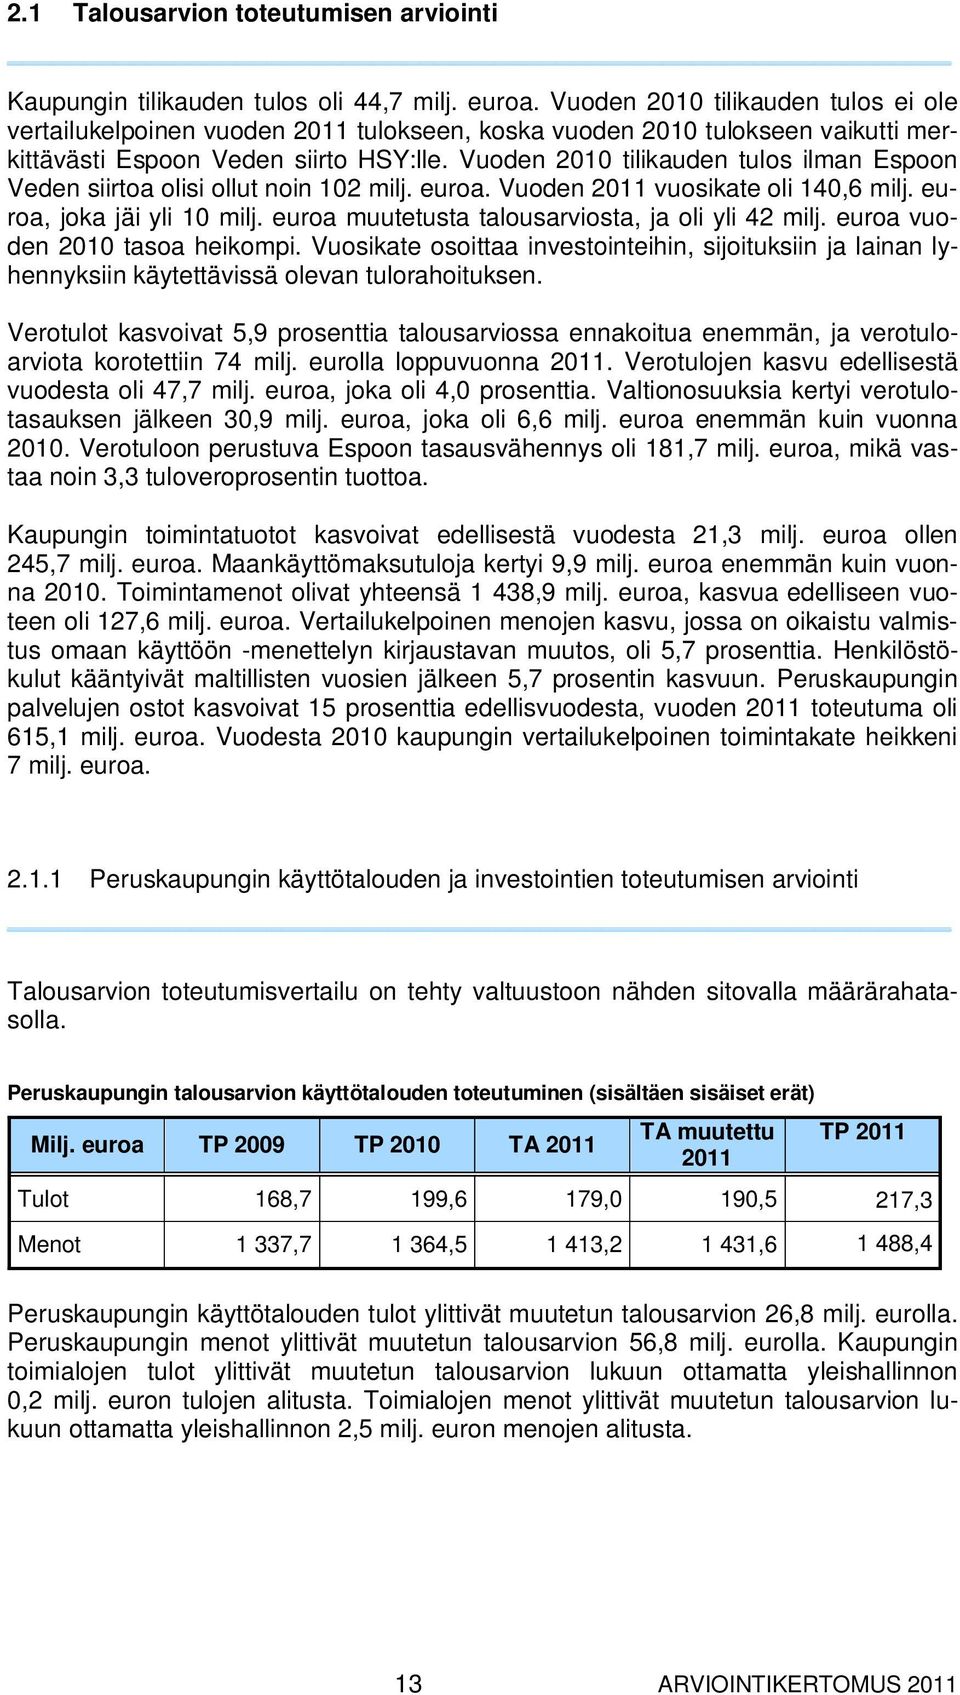 Vuoden 2010 tilikauden tulos ilman Espoon Veden siirtoa olisi ollut noin 102 milj. euroa. Vuoden 2011 vuosikate oli 140,6 milj. euroa, joka jäi yli 10 milj.